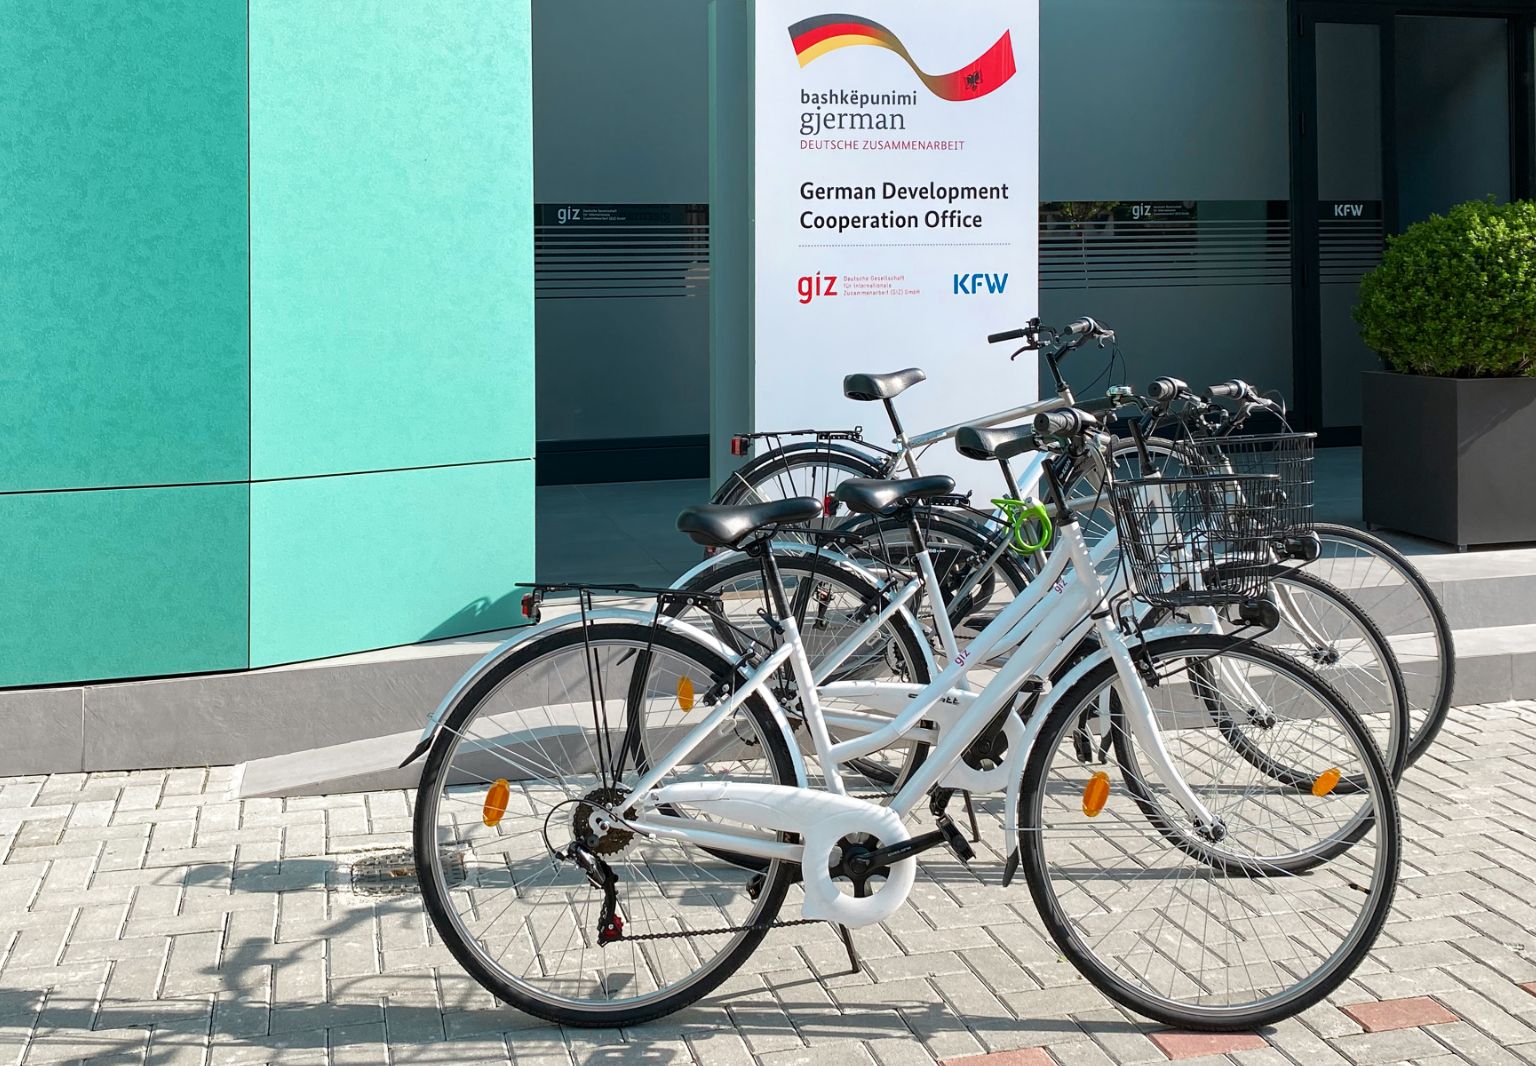 Foto: Mehrere Fahrräder stehen nebeneinander vor einem Gebäude mit einem Schild: „German Development Cooperation Office“.